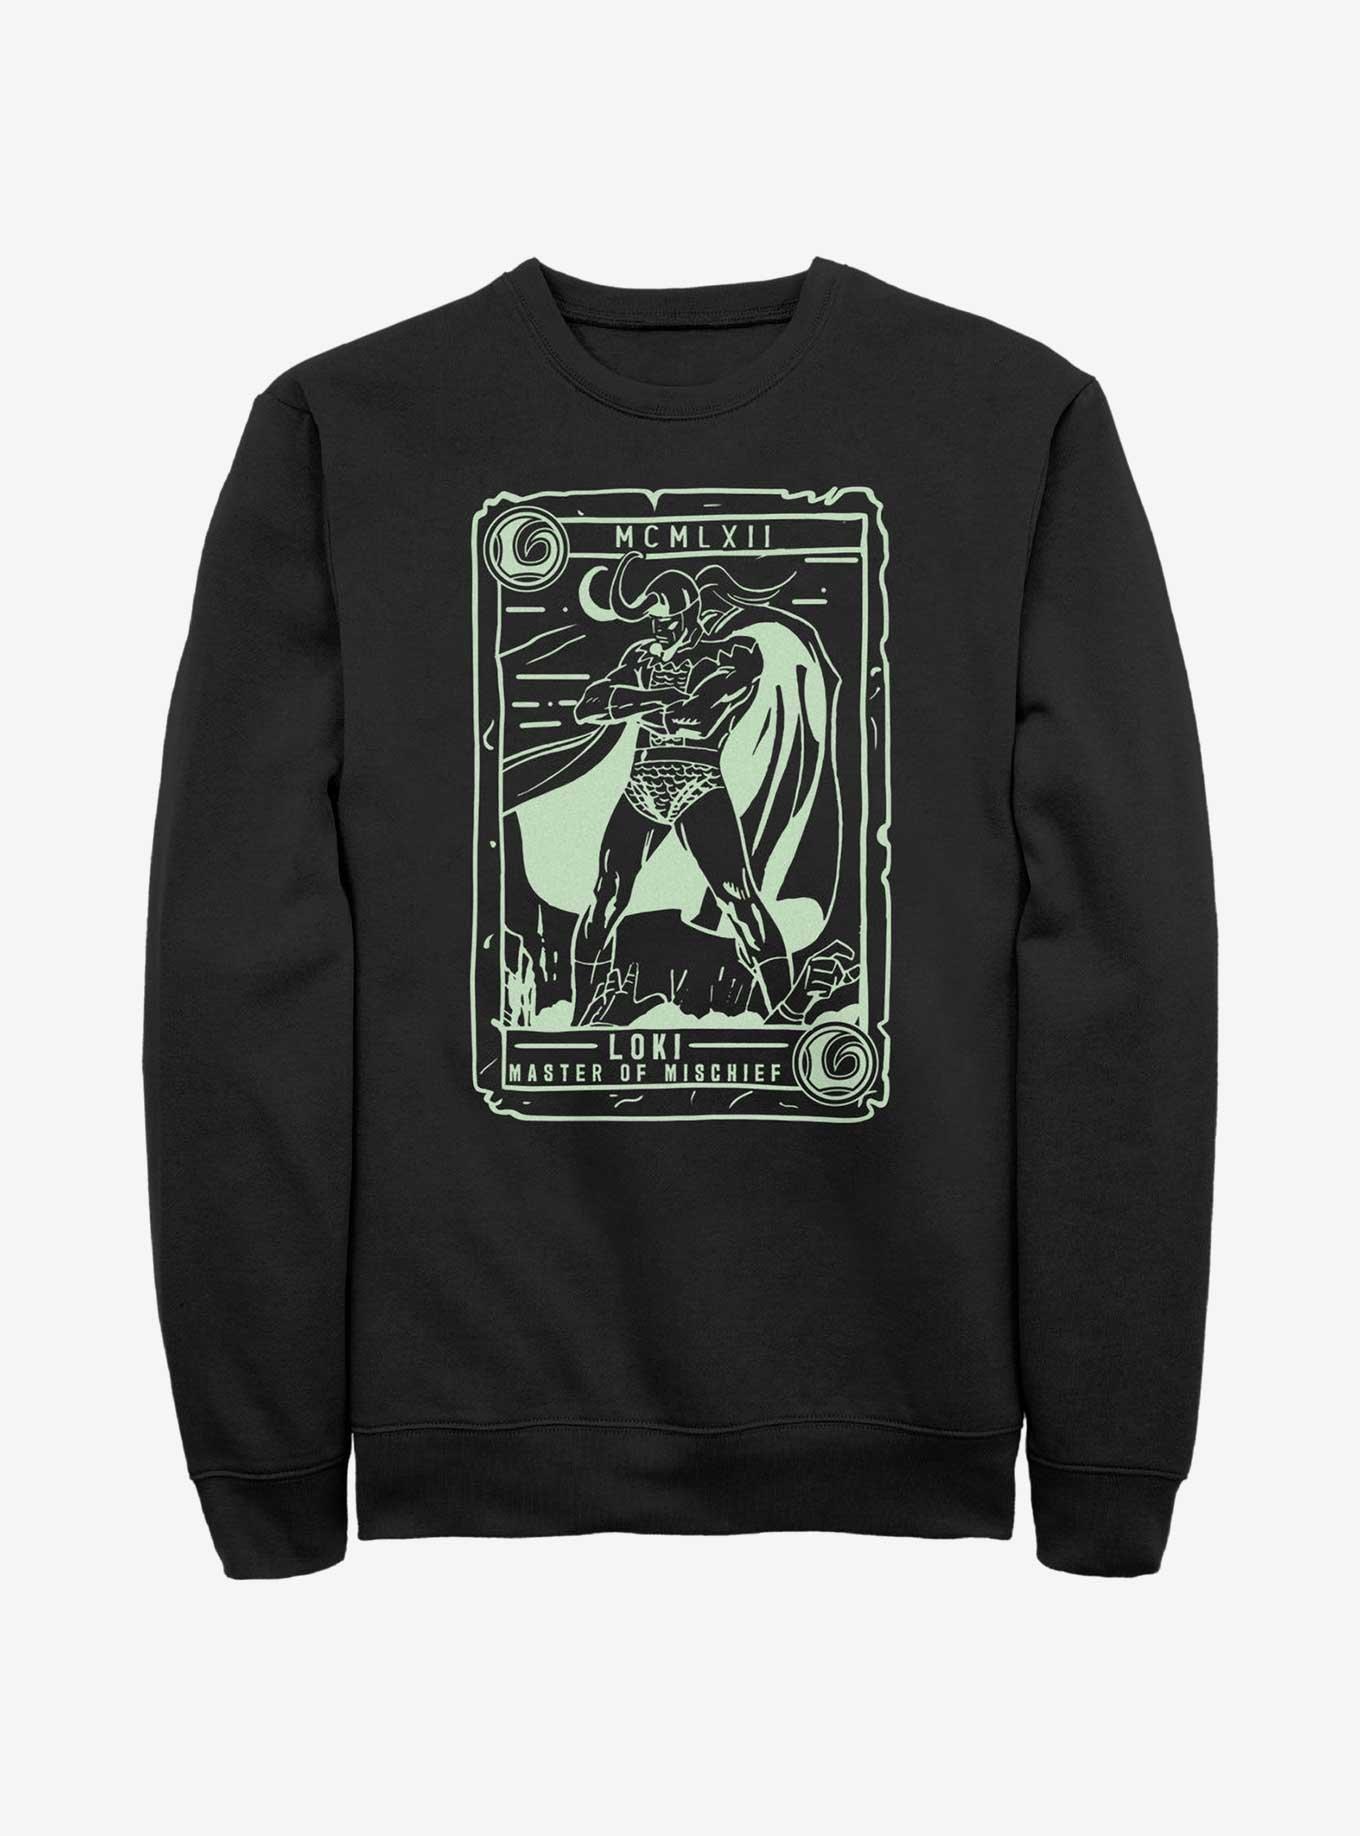 Marvel Loki Collector Card Sweatshirt